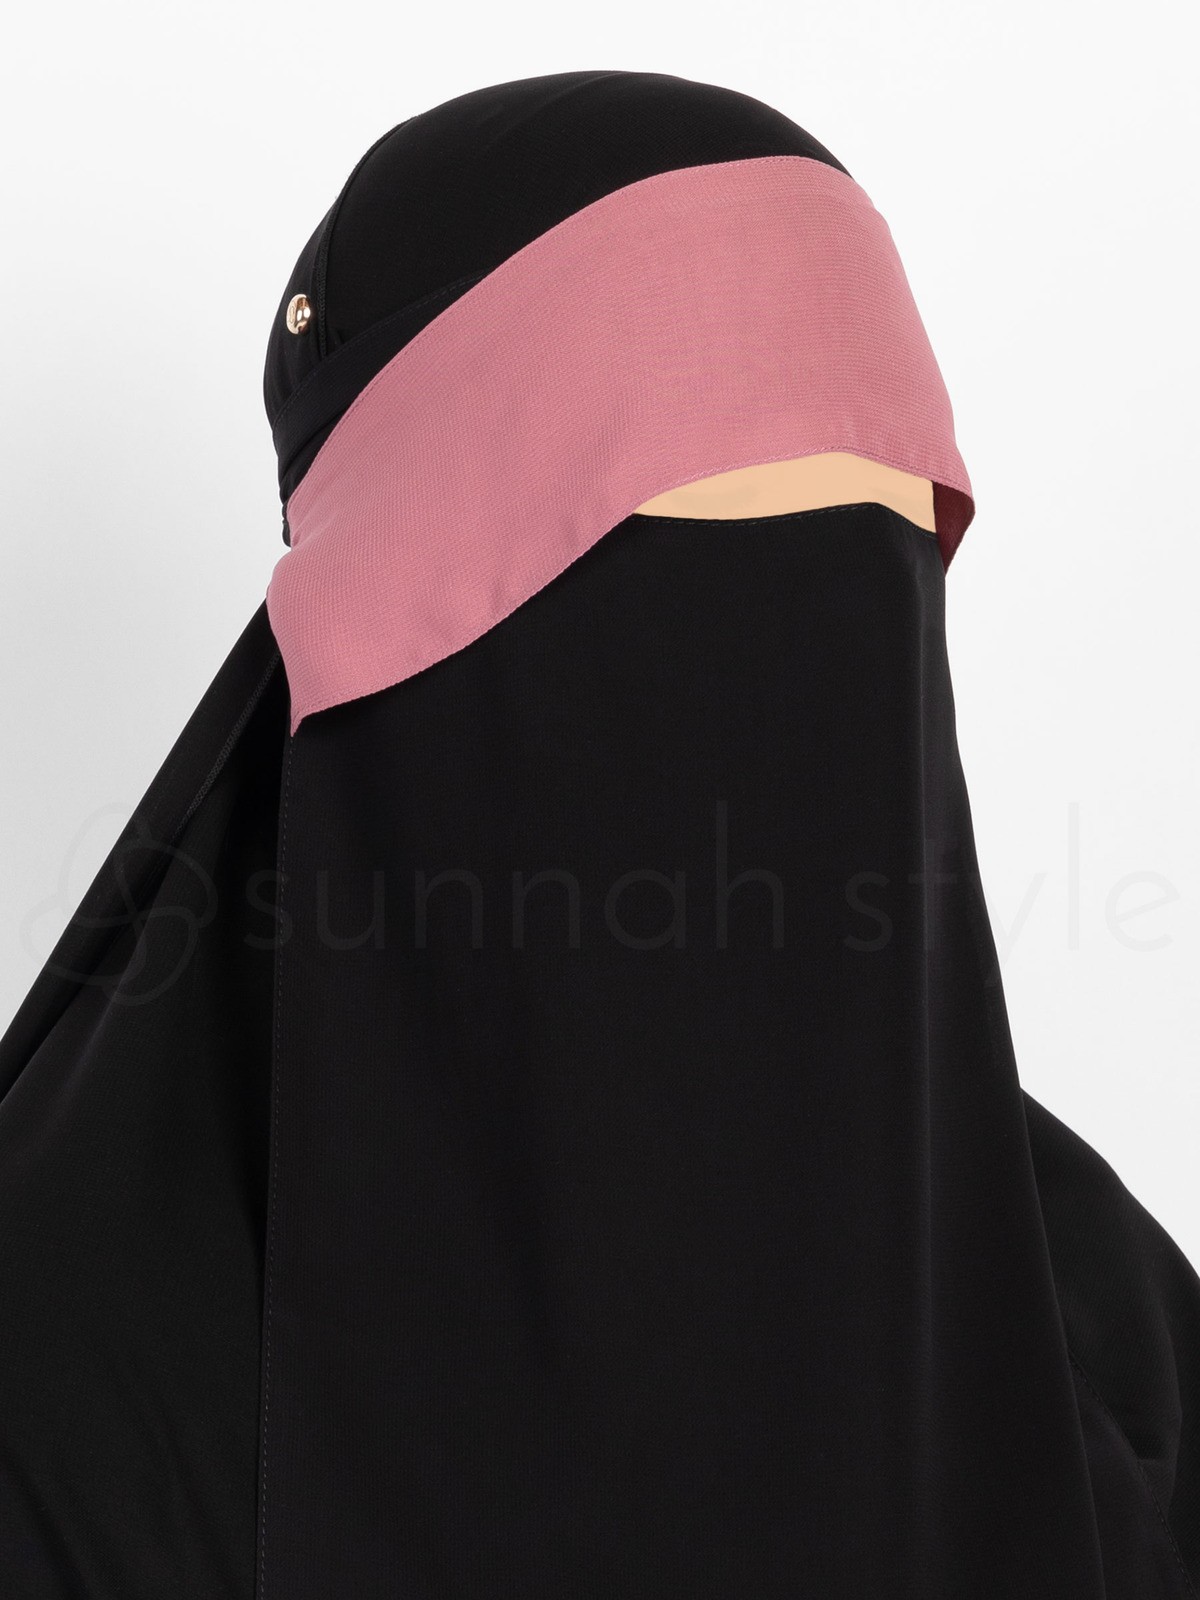 Sunnah Style - Adjustable Niqab Flap (Black)